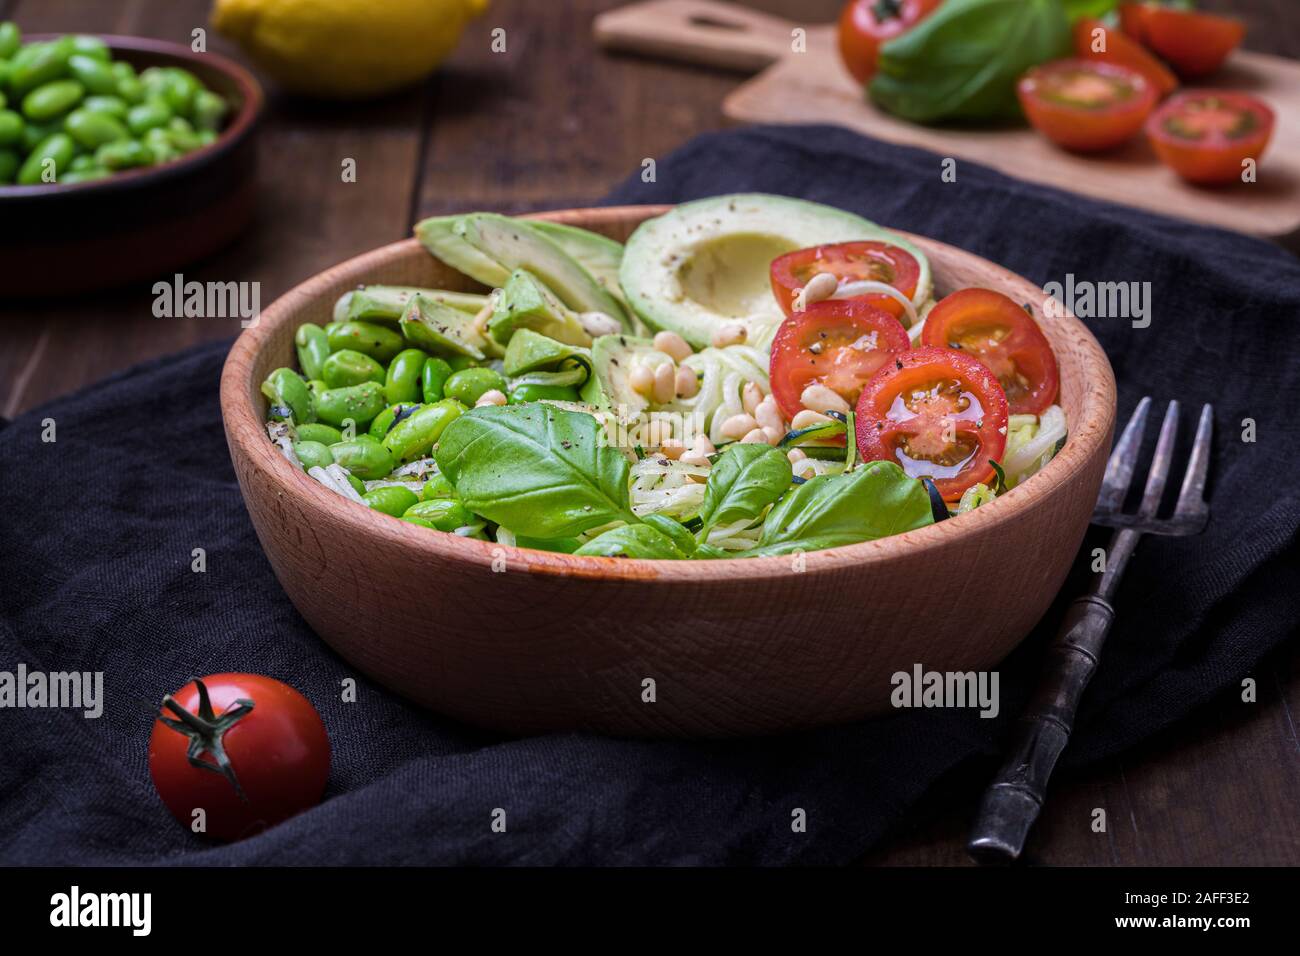 Vue latérale d'une salade fraîche, saine avec zoodles nouilles aux courgettes, tomates, avocat et bébé edamame beans. La salade n'est dans un bol en bois sur une b Banque D'Images